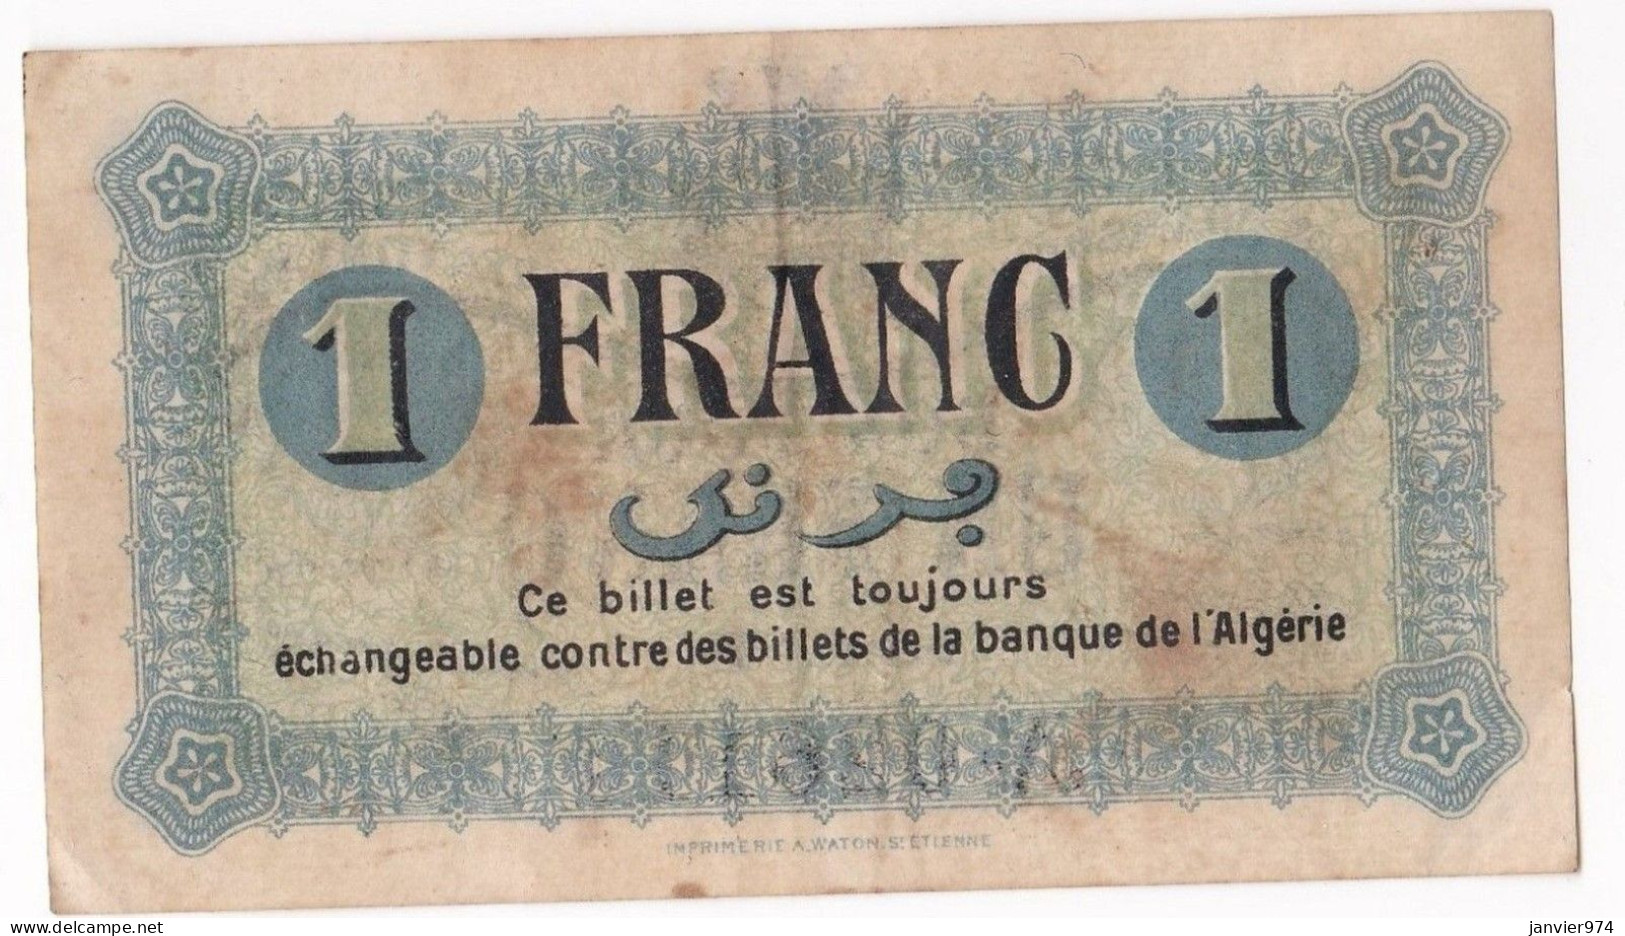 Algerie Constantine .Chambre De Commerce. 1 Franc 1 Mai 1945 Serie B N° 026110, Billet Colonial Circulé - Algeria